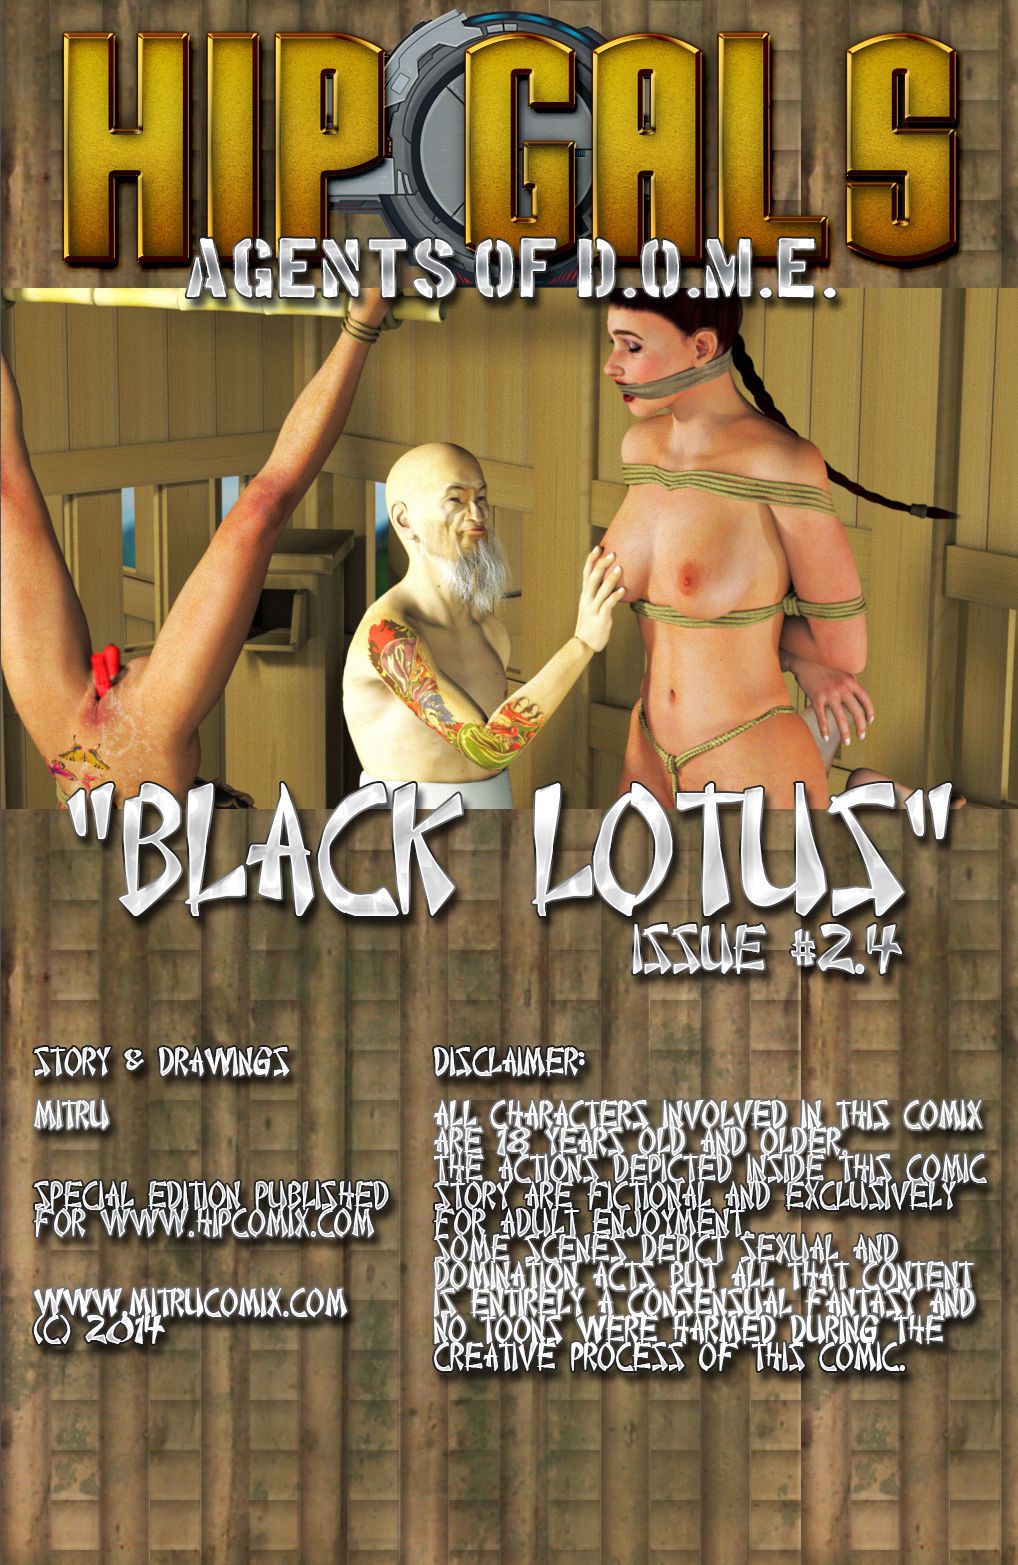 noir Lotus 1-6 - PARTIE 4